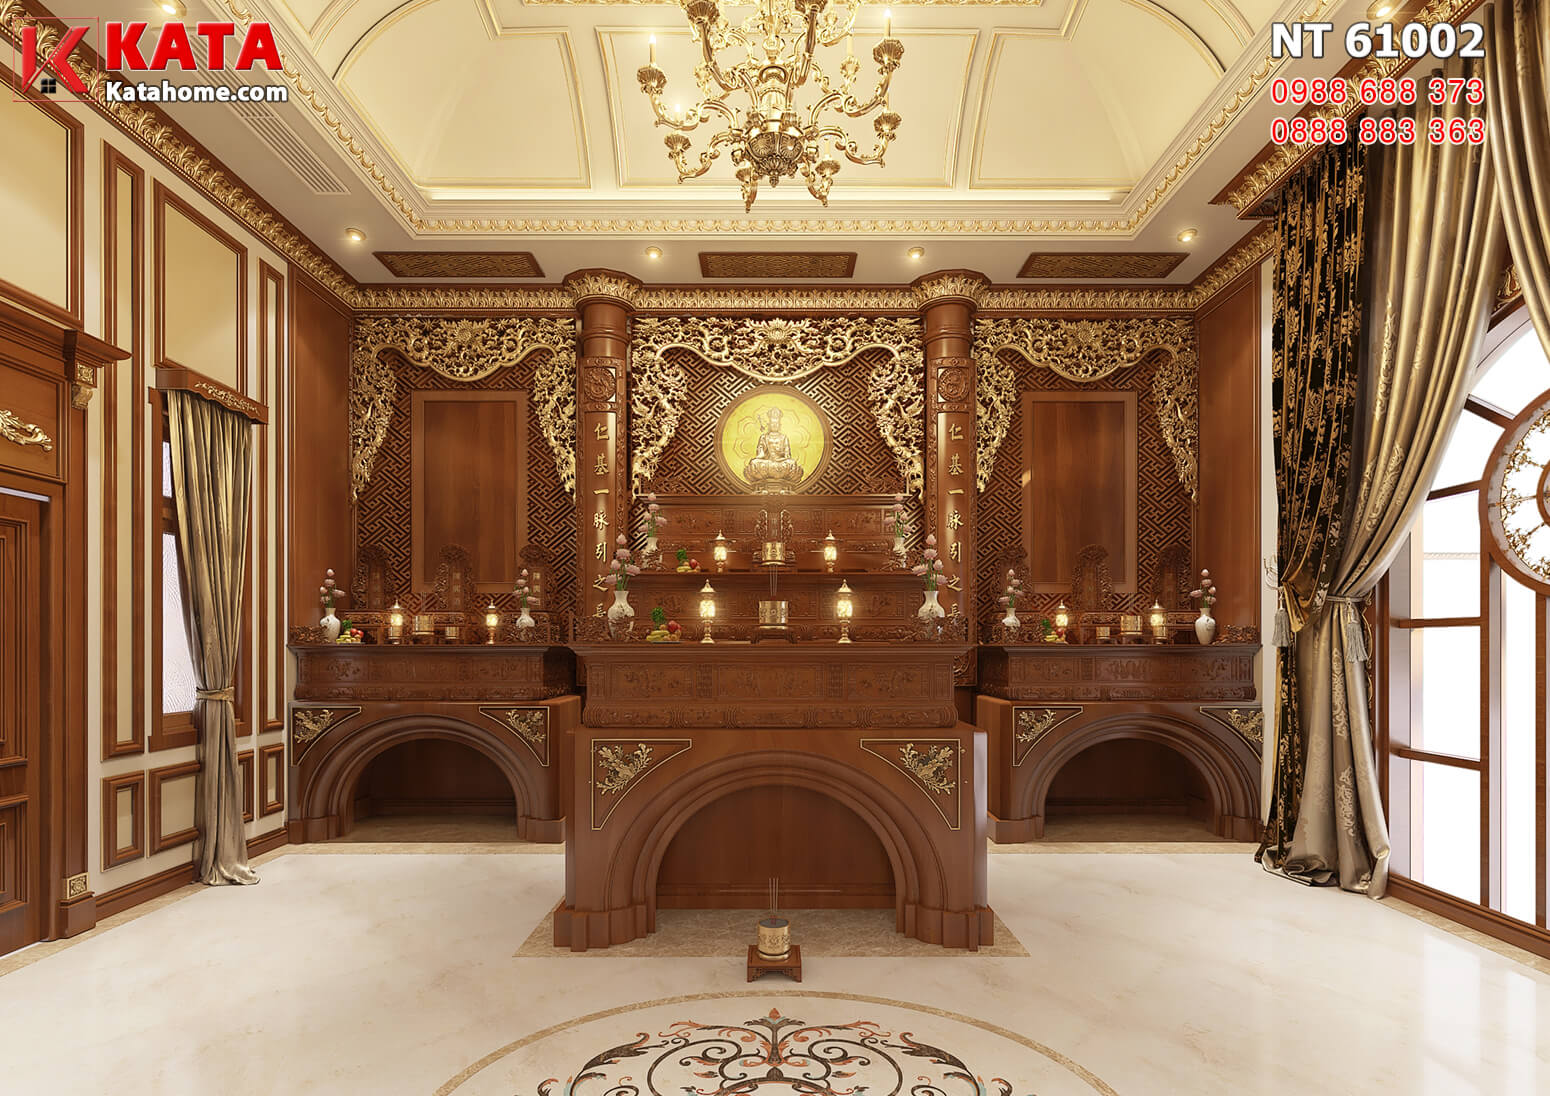 Hình ảnh: Thiết kế nội thất tân cổ điển đẹp cho không gian phòng thờ